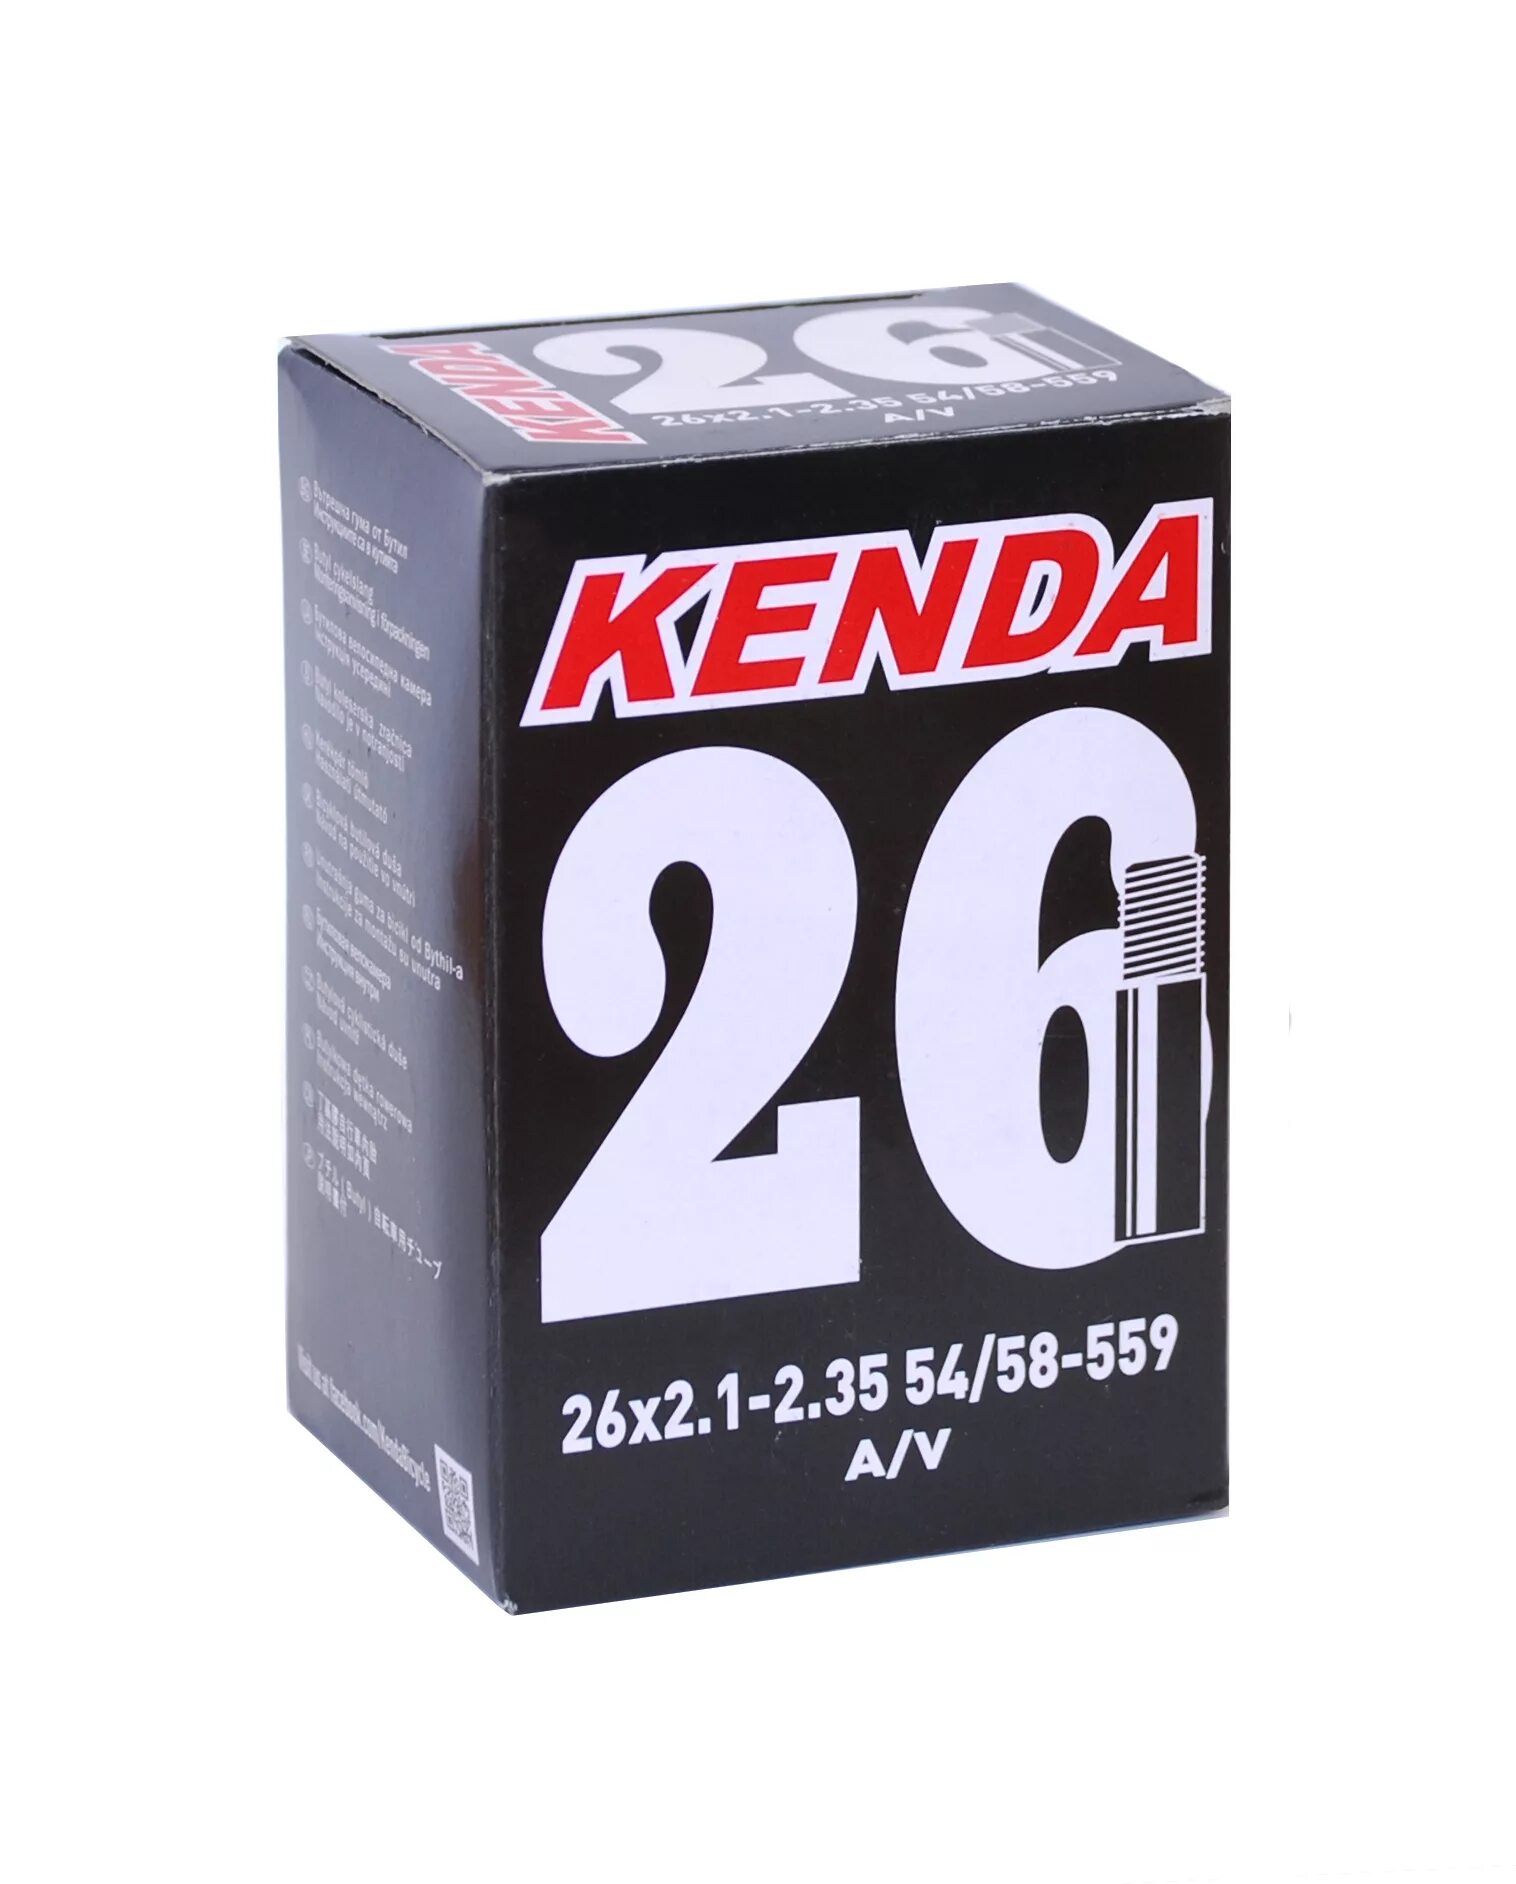 Камера 26. Камера 26 х 2.1 - 2.35 a/v Kenda e-ready. Kenda 26 2.35. Камера велосипедная Kenda 26x2.125-2.35. Камера 26х2.10-2.35" Kenda, av.